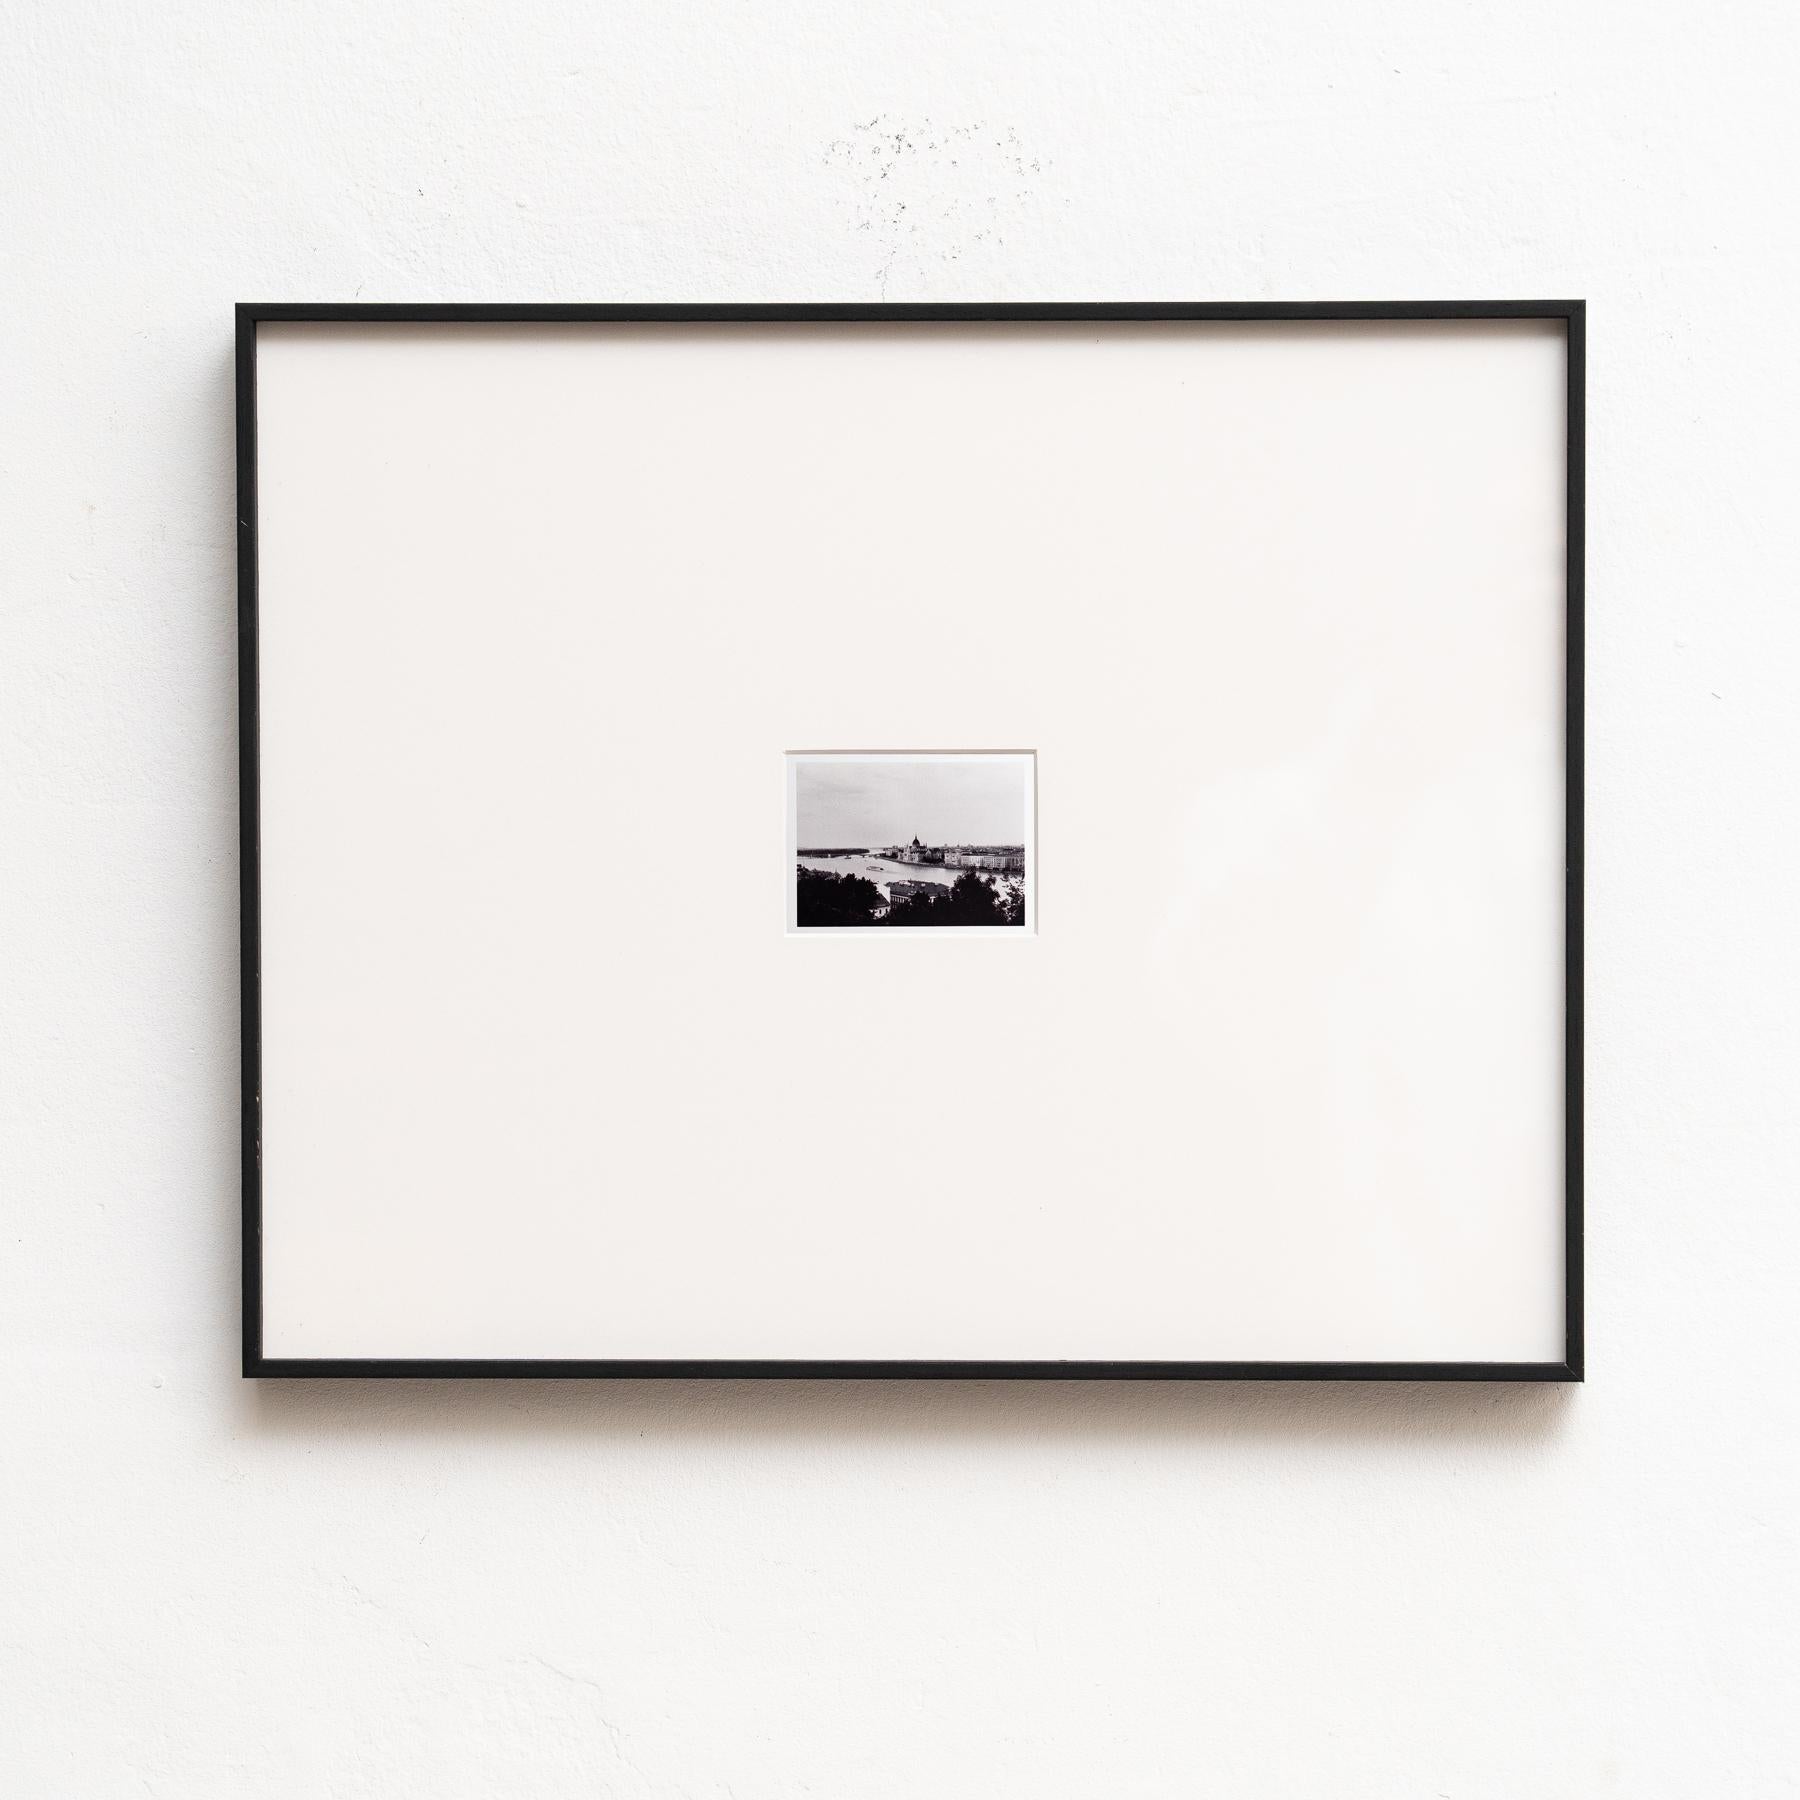 Auf der gerahmten Schwarz-Weiß-Fotografie von Pascal und Vastian entfaltet sich das Stadtbild in einem zeitlosen Panorama mit einem majestätischen Fluss, der sich durch das Herz des städtischen Lebens schlängelt. Der Kontrast zwischen Licht und